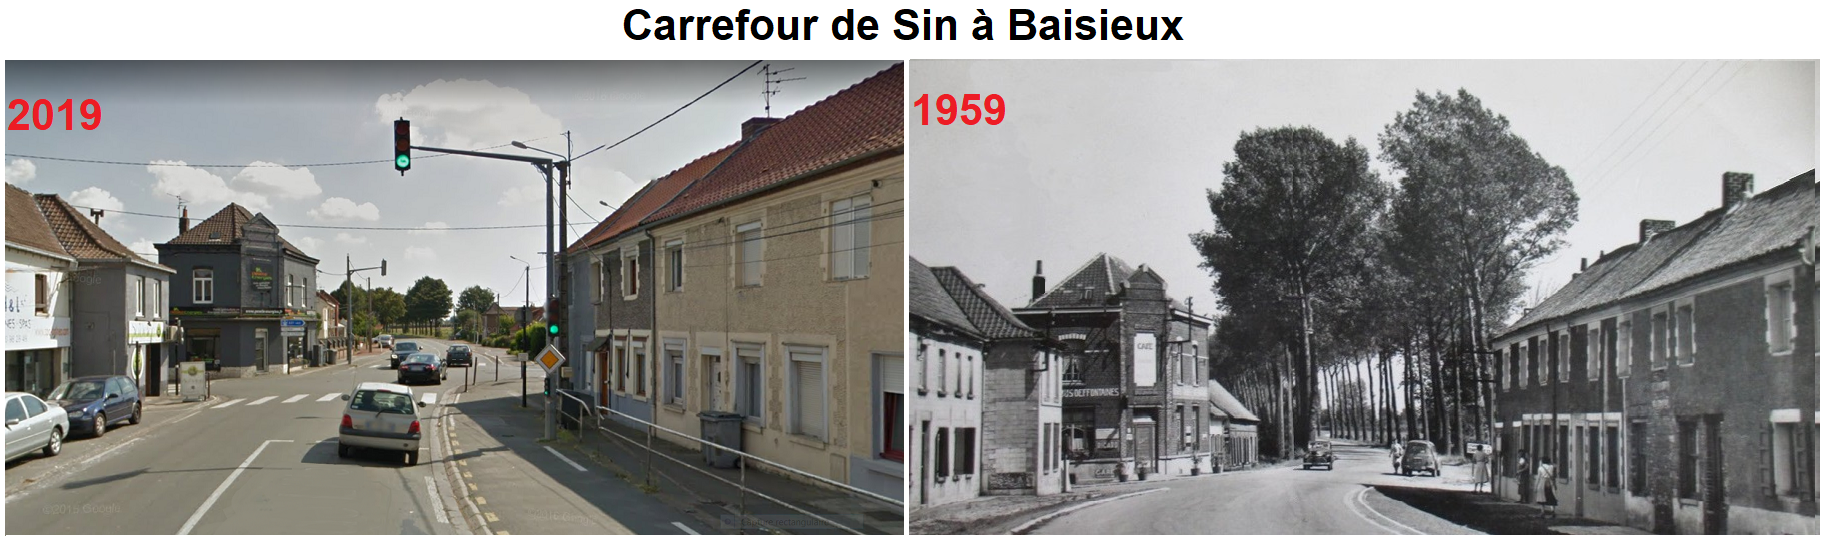 Carrefour de Baisieux sin 2019/1959